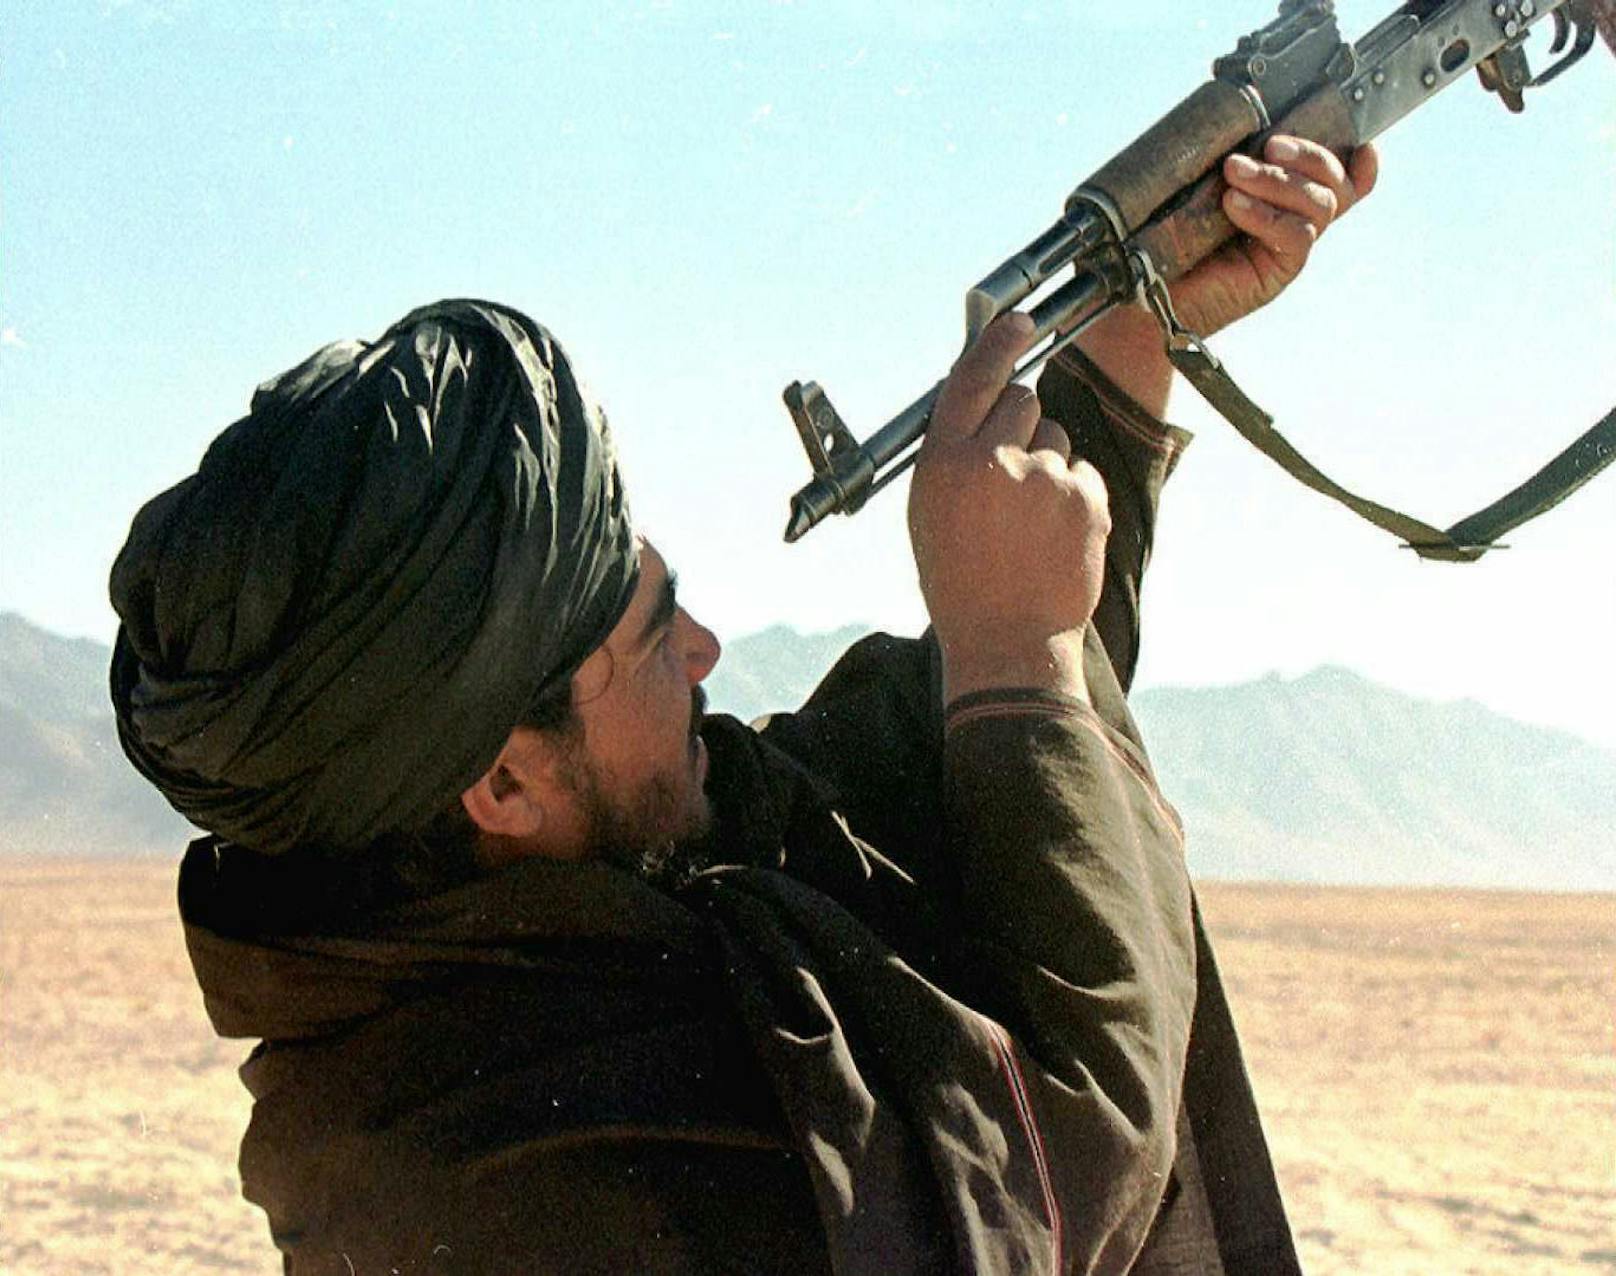 Ein Taliban-Kämpfer in Afghanistan bei der Reinigung seiner Waffe. Archivbild, 27. Oktober 1997